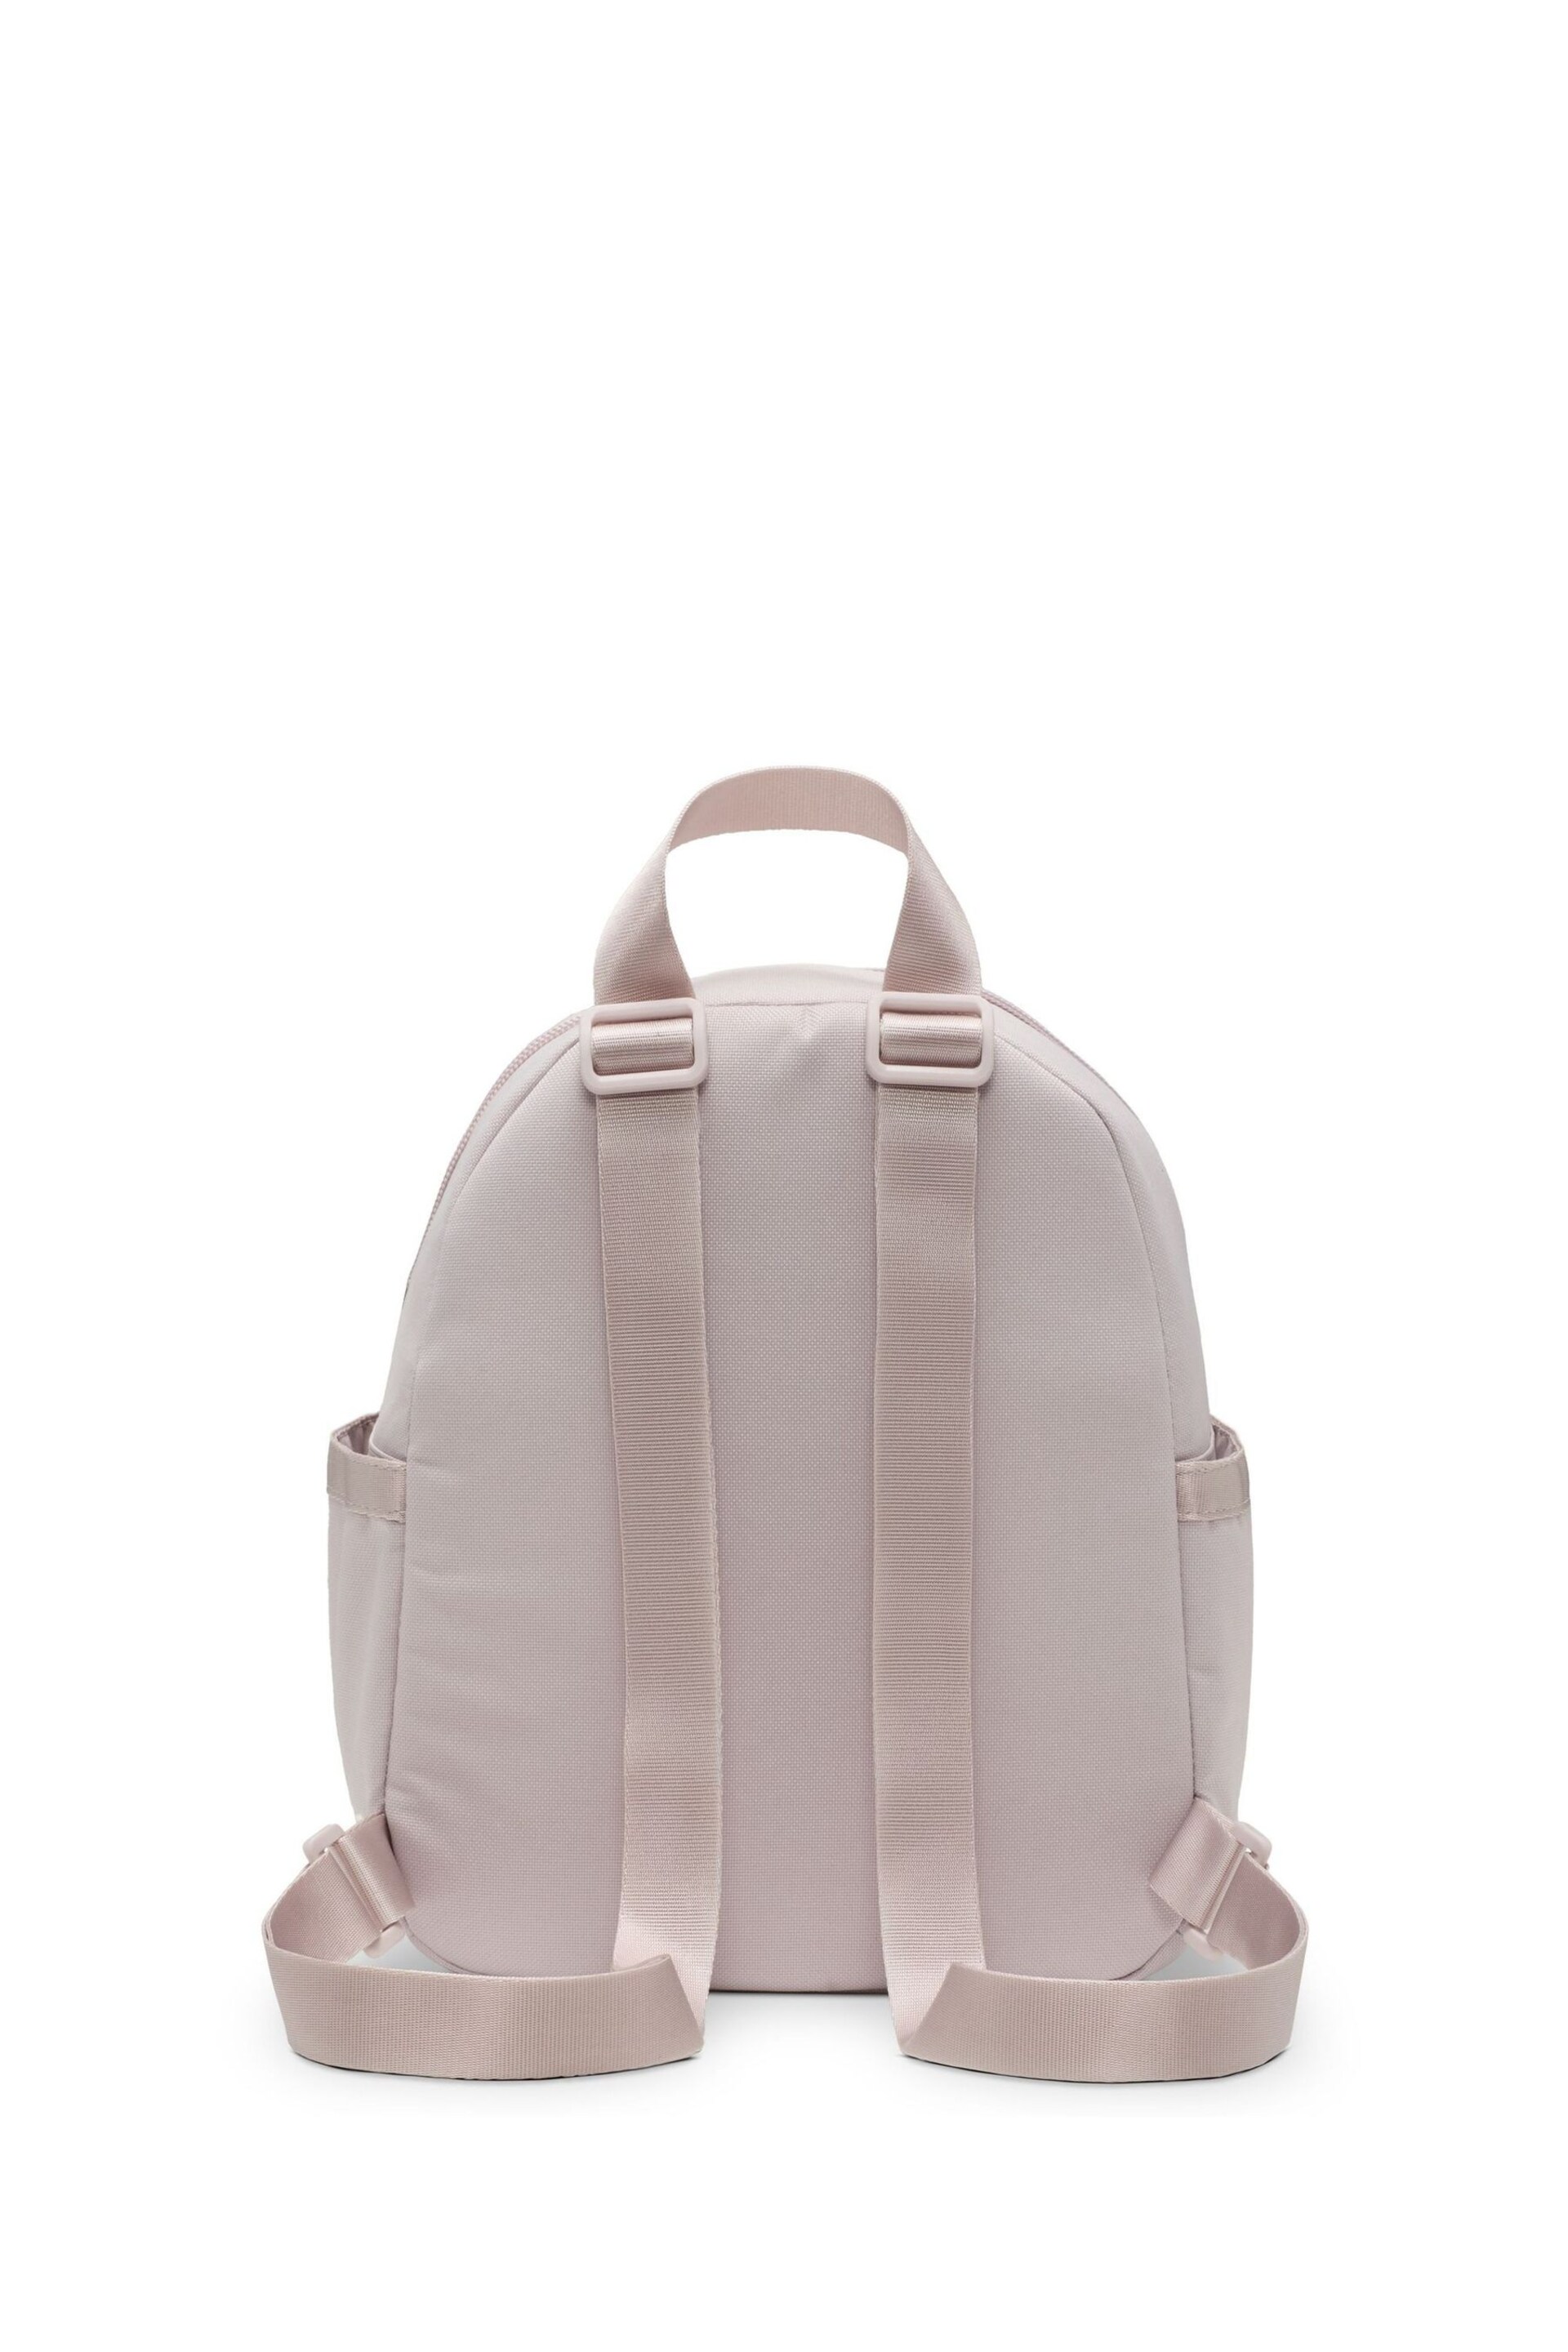 Nike Pink Mini Womens 6L Backpack - Image 6 of 12